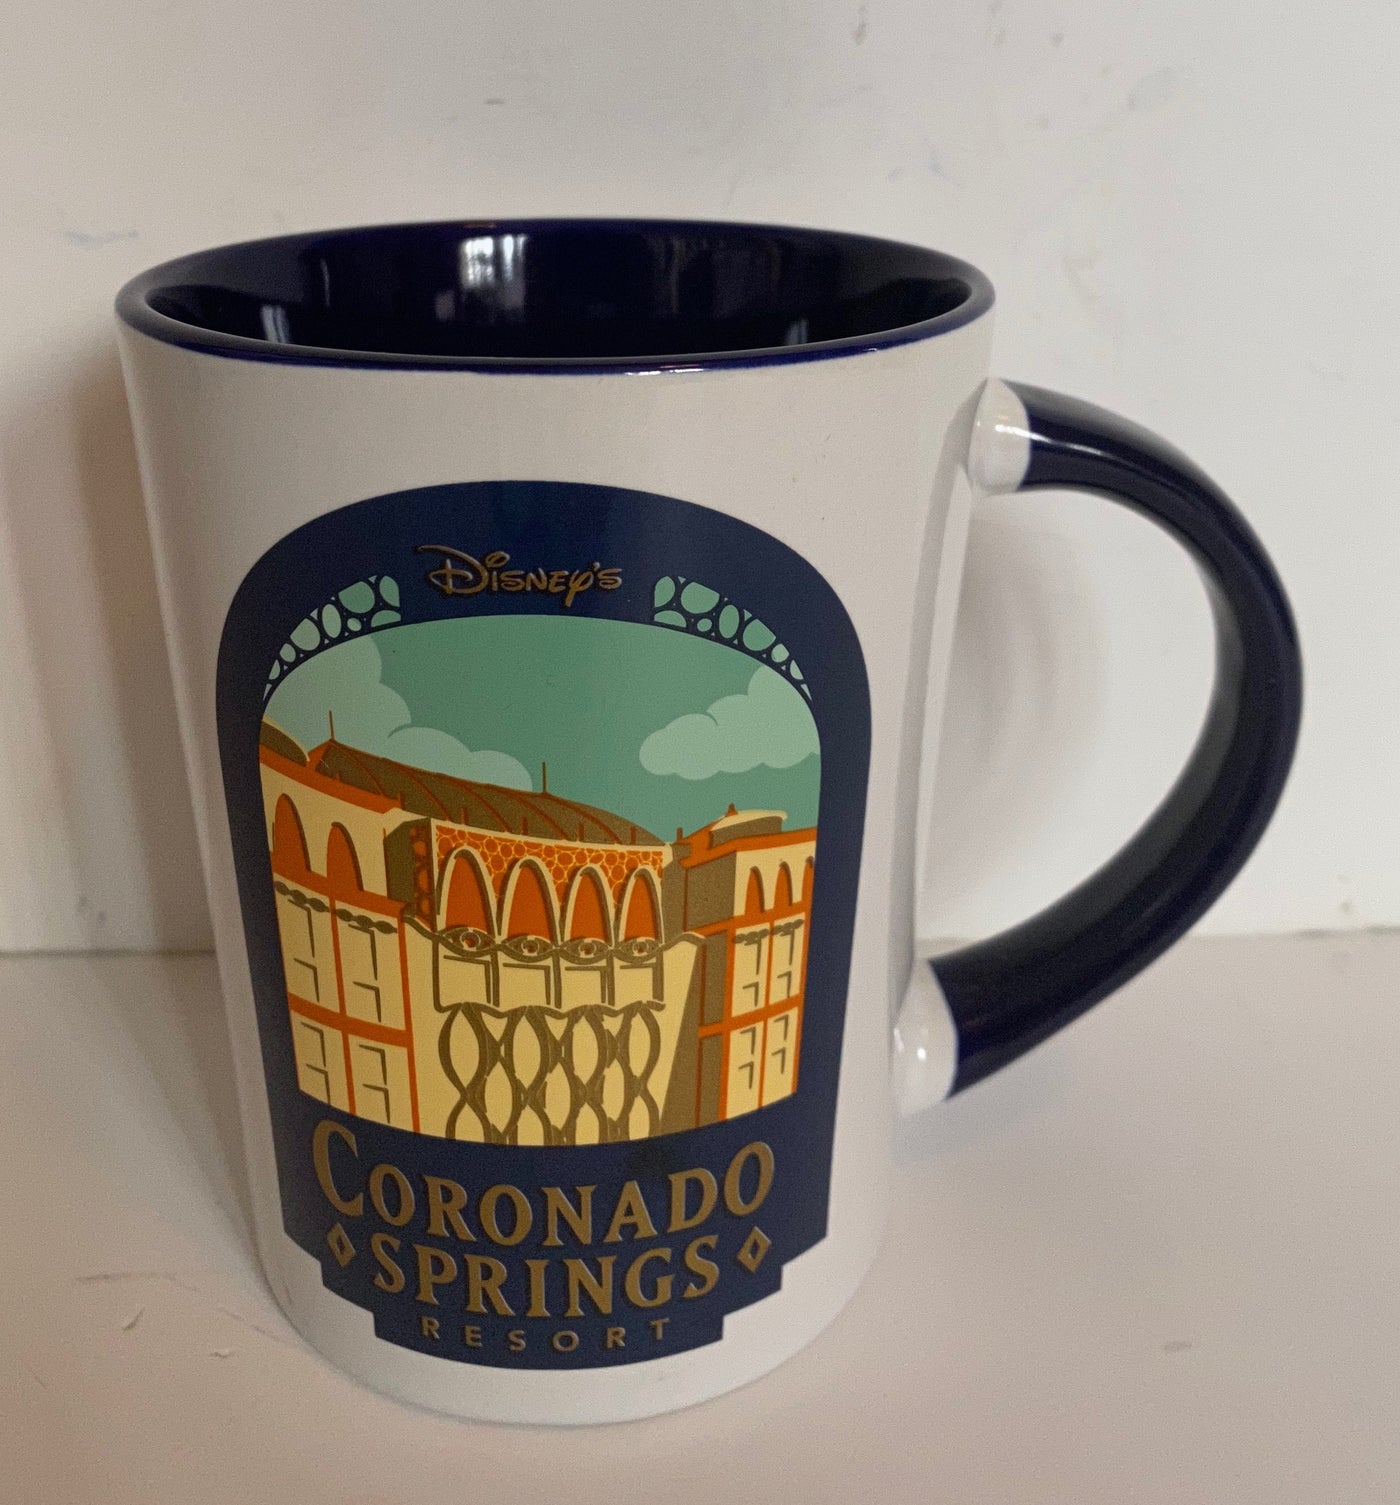 Disney Parks Coronado Springs Resort Ceramic Coffee Mug New